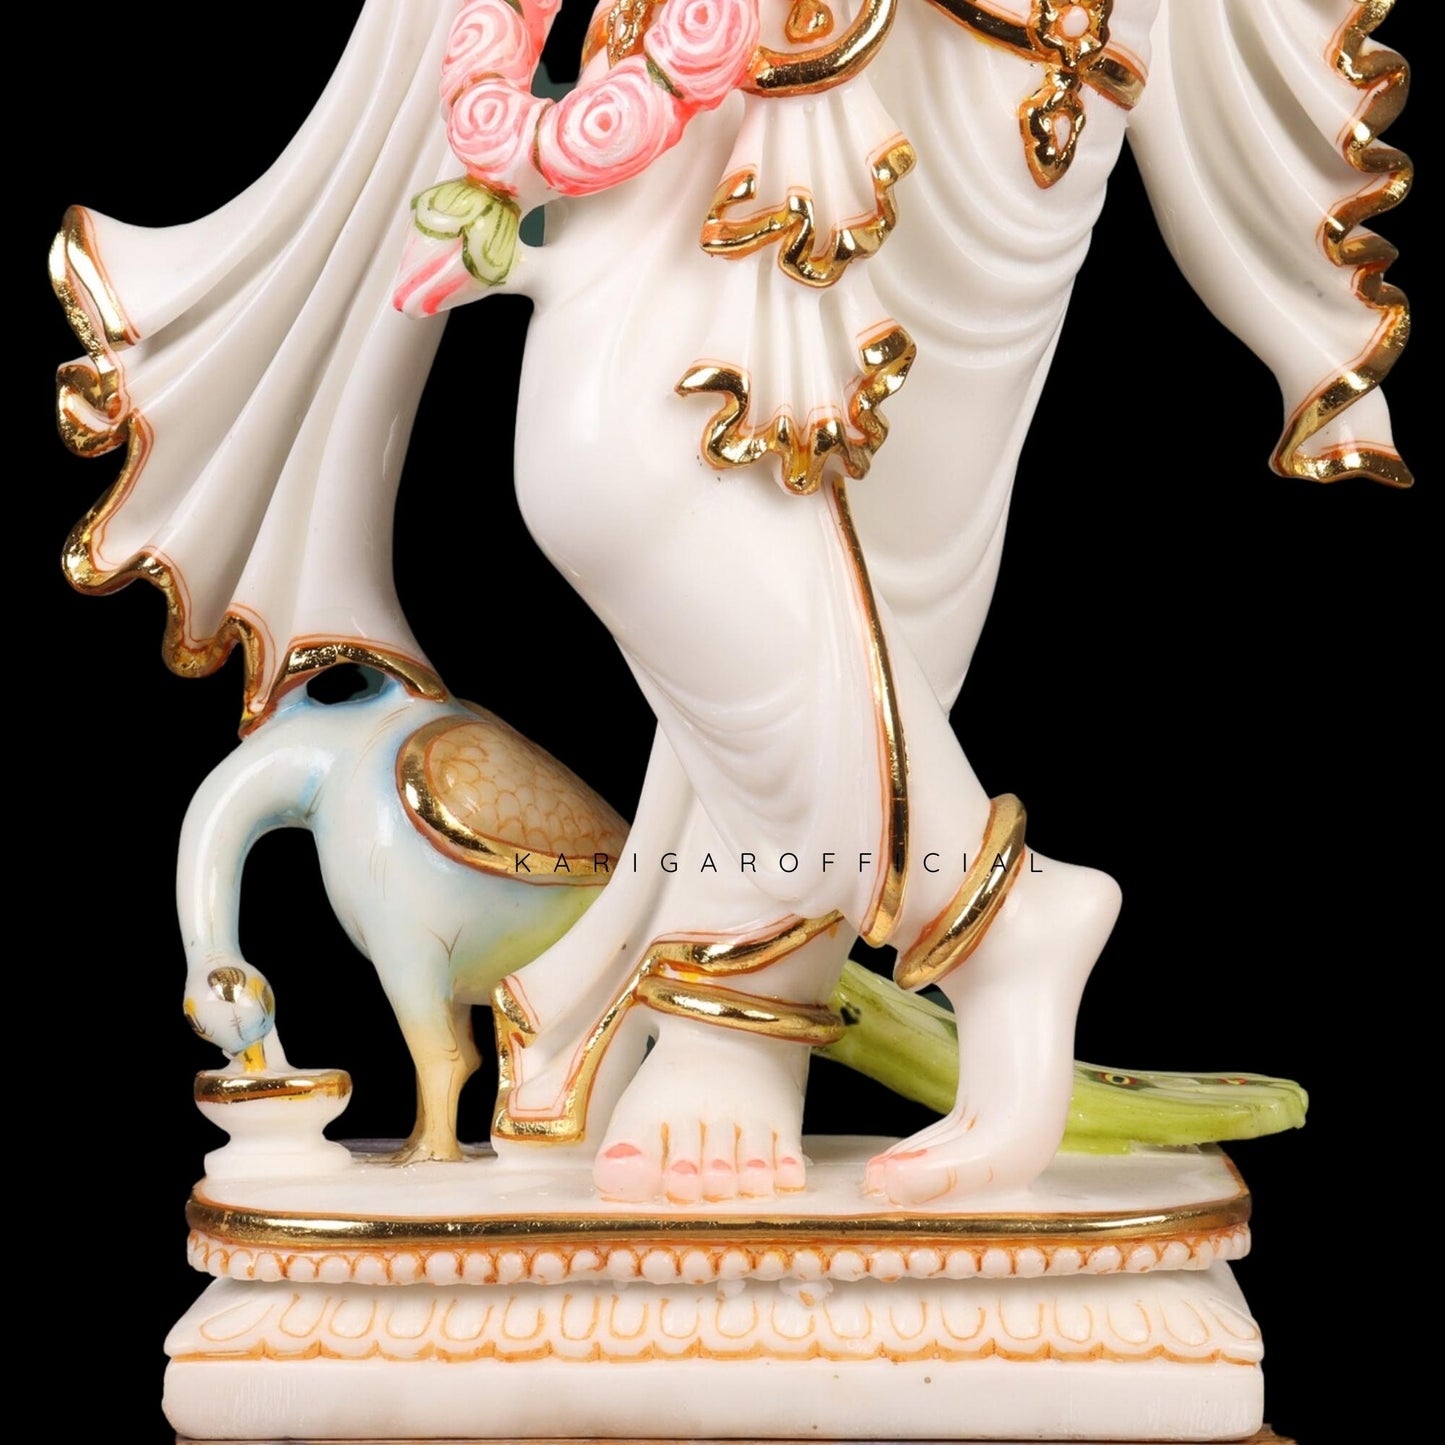 Estatua de Krishna, ídolo de Krishna grande de 24 pulgadas, figura de Krishna con acento rosa en oro blanco, dios hindú Murlimanohar Murti pintado a mano, escultura de Pooja del templo del hogar, regalo perfecto de aniversario de inauguración de la casa